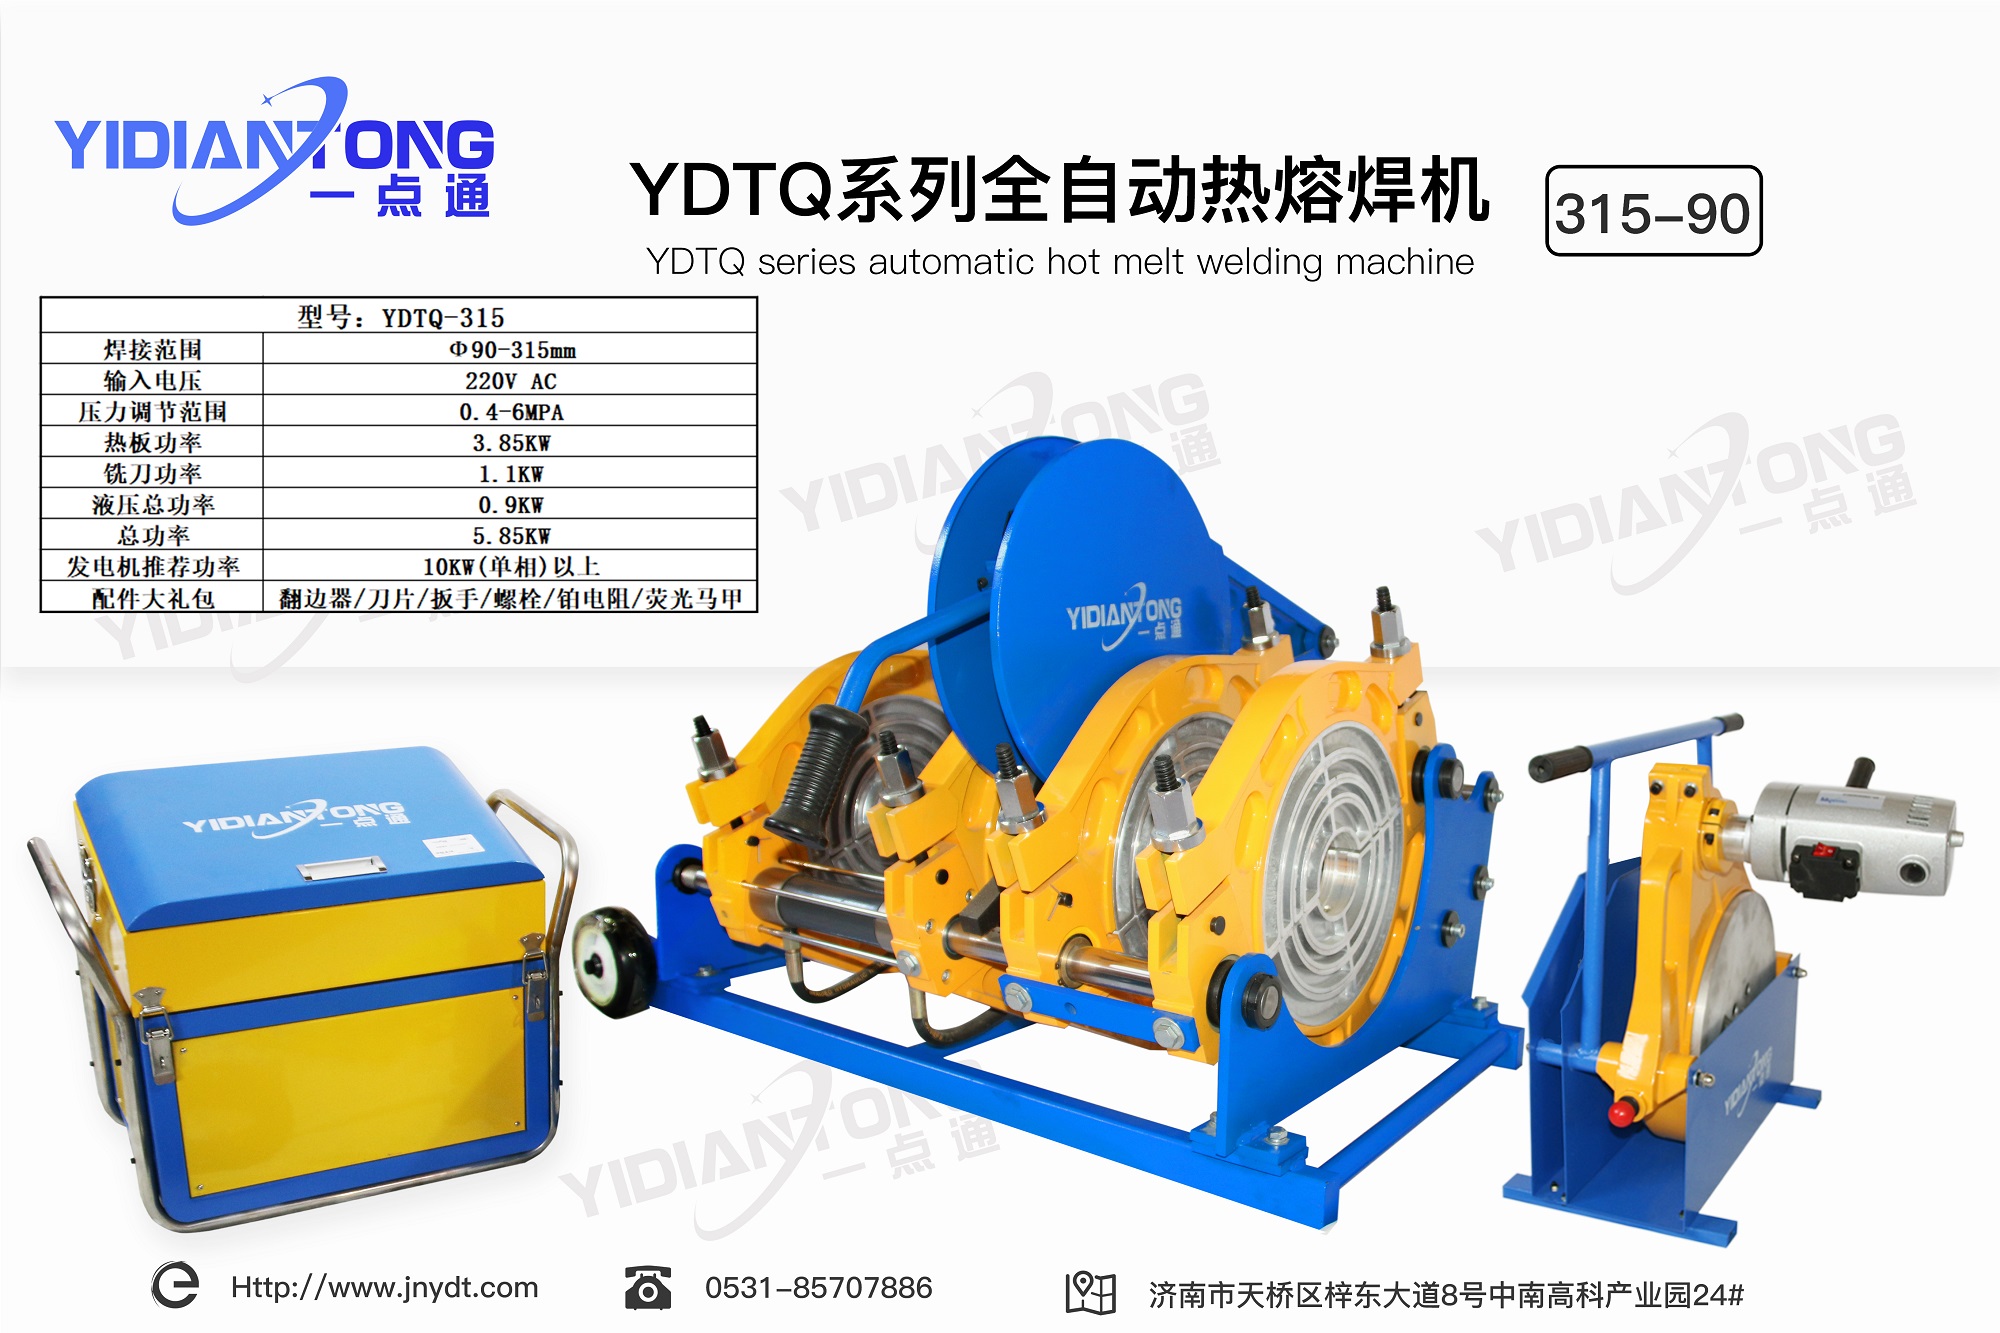 YDTQ系列全自动热熔焊机